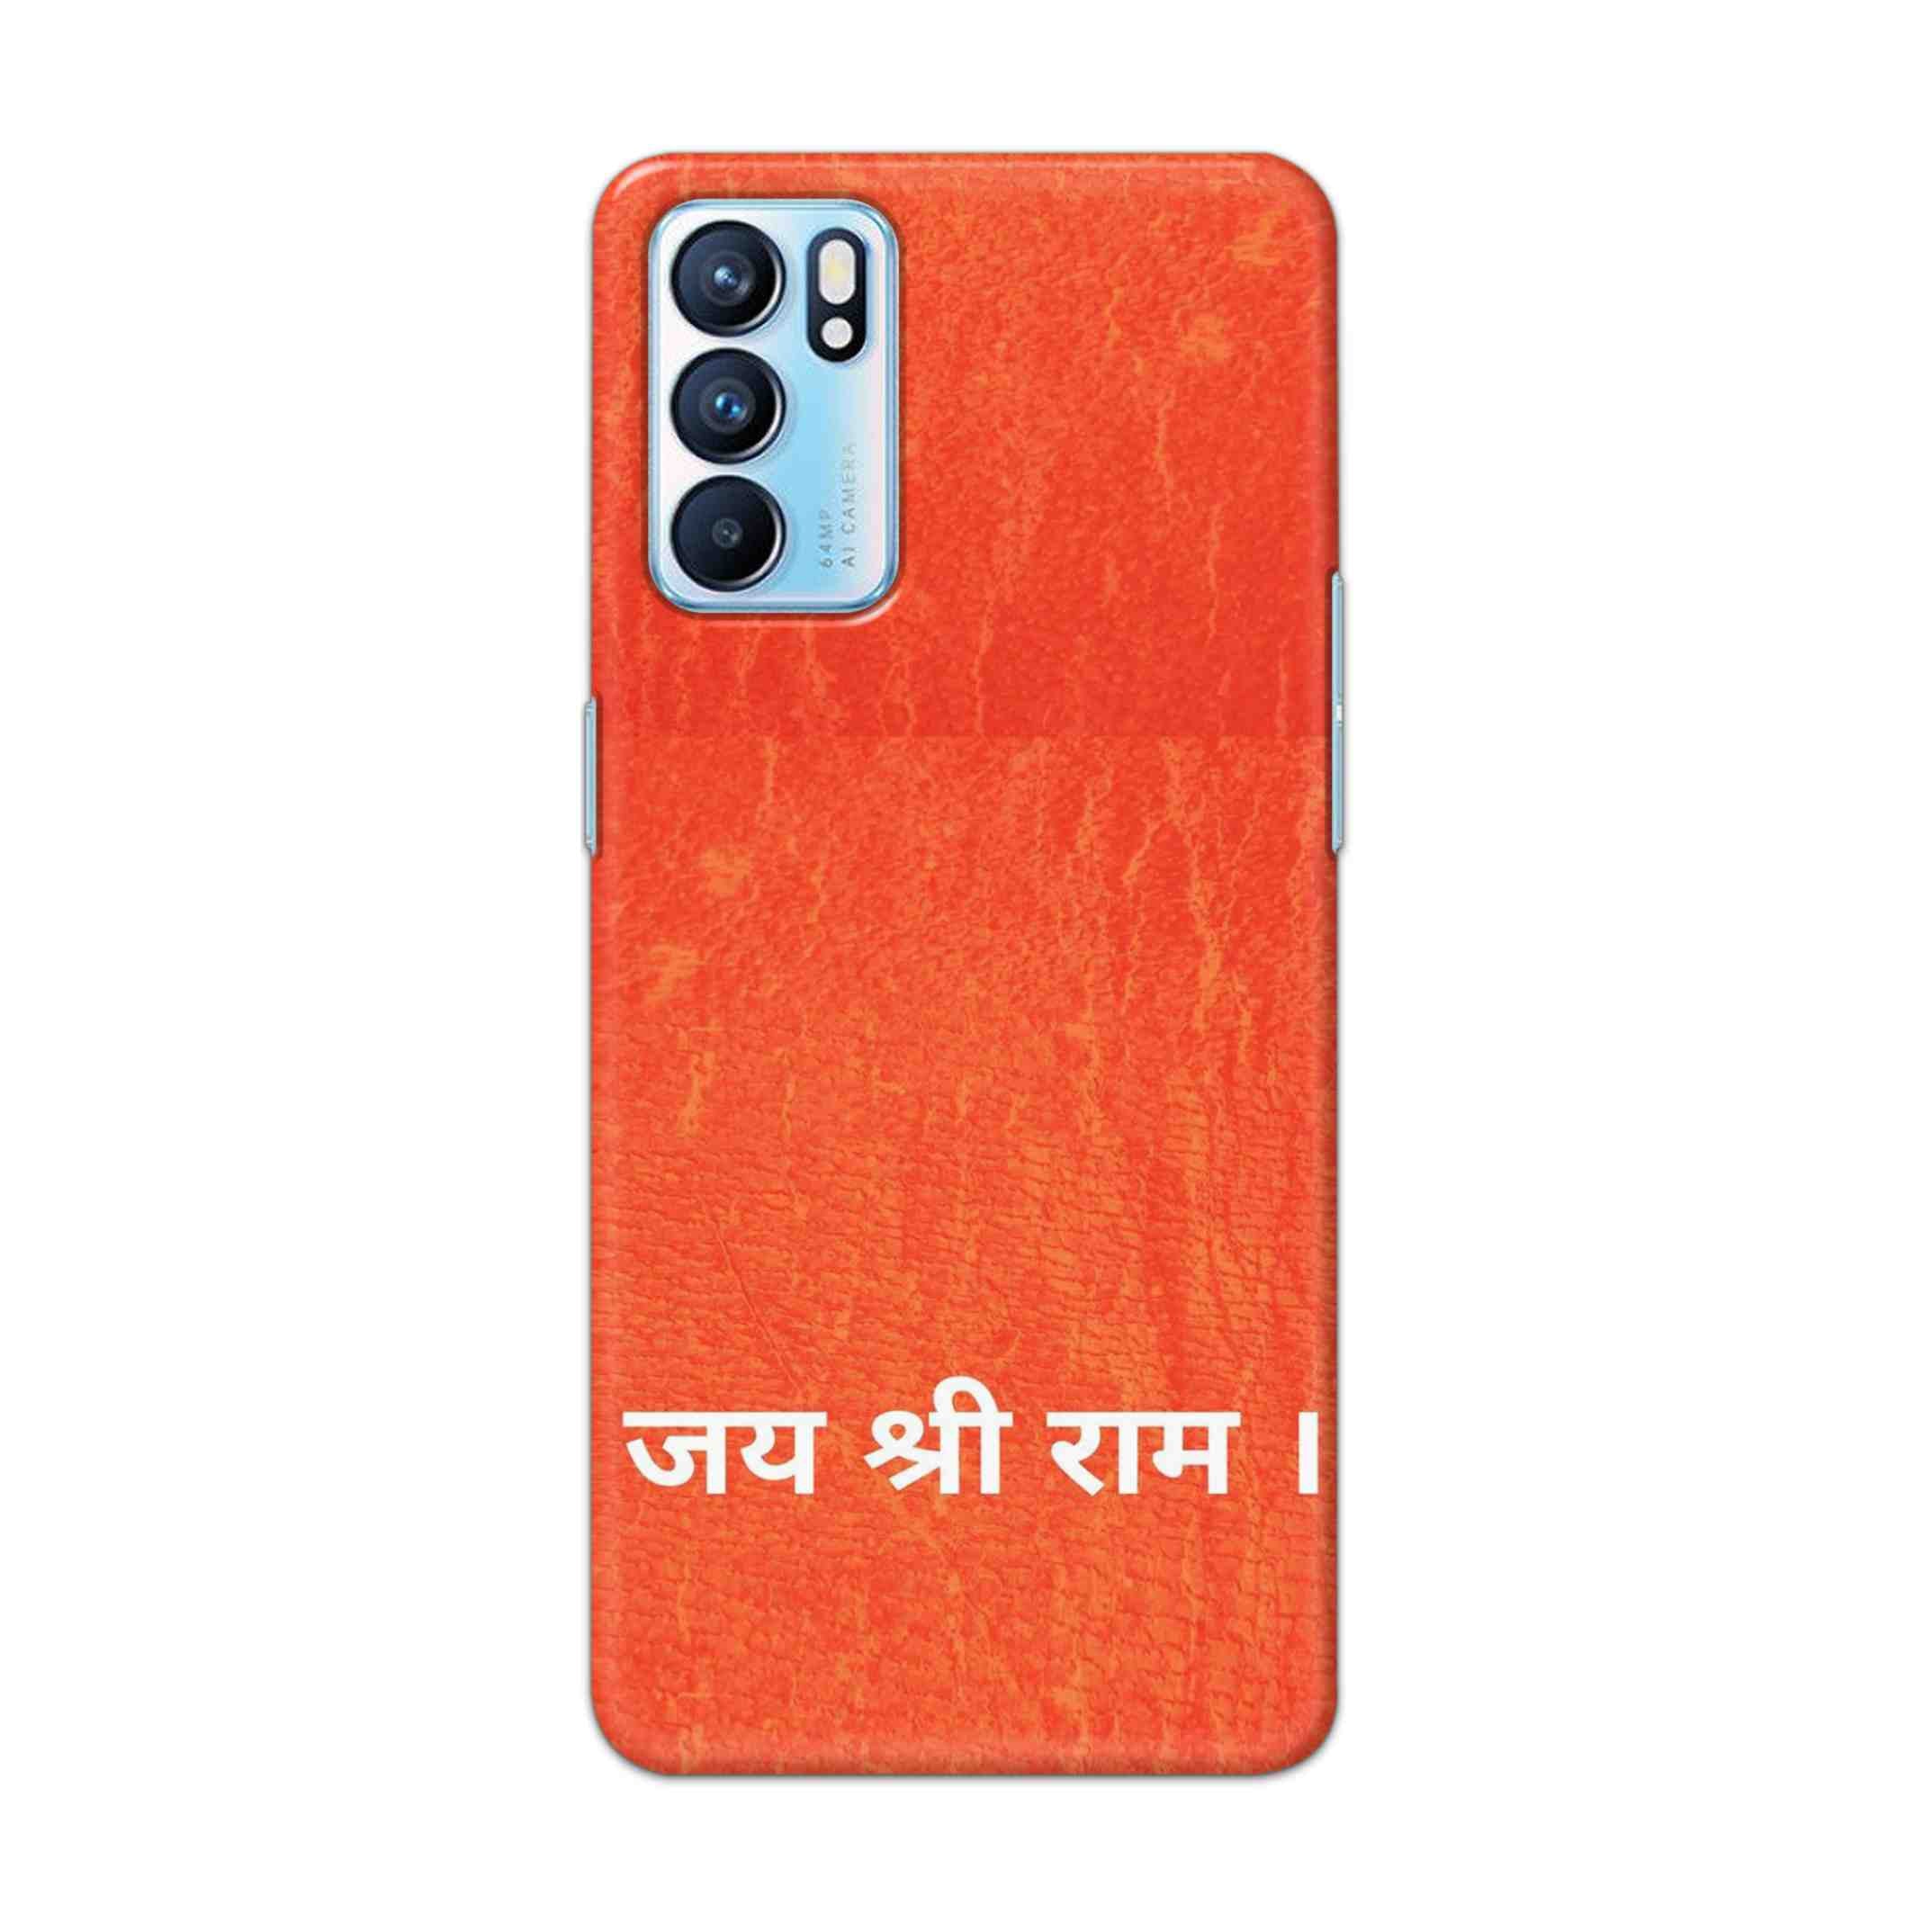 Buy Jai Shree Ram Hard Back Mobile Phone Case Cover For OPPO RENO 6 Online